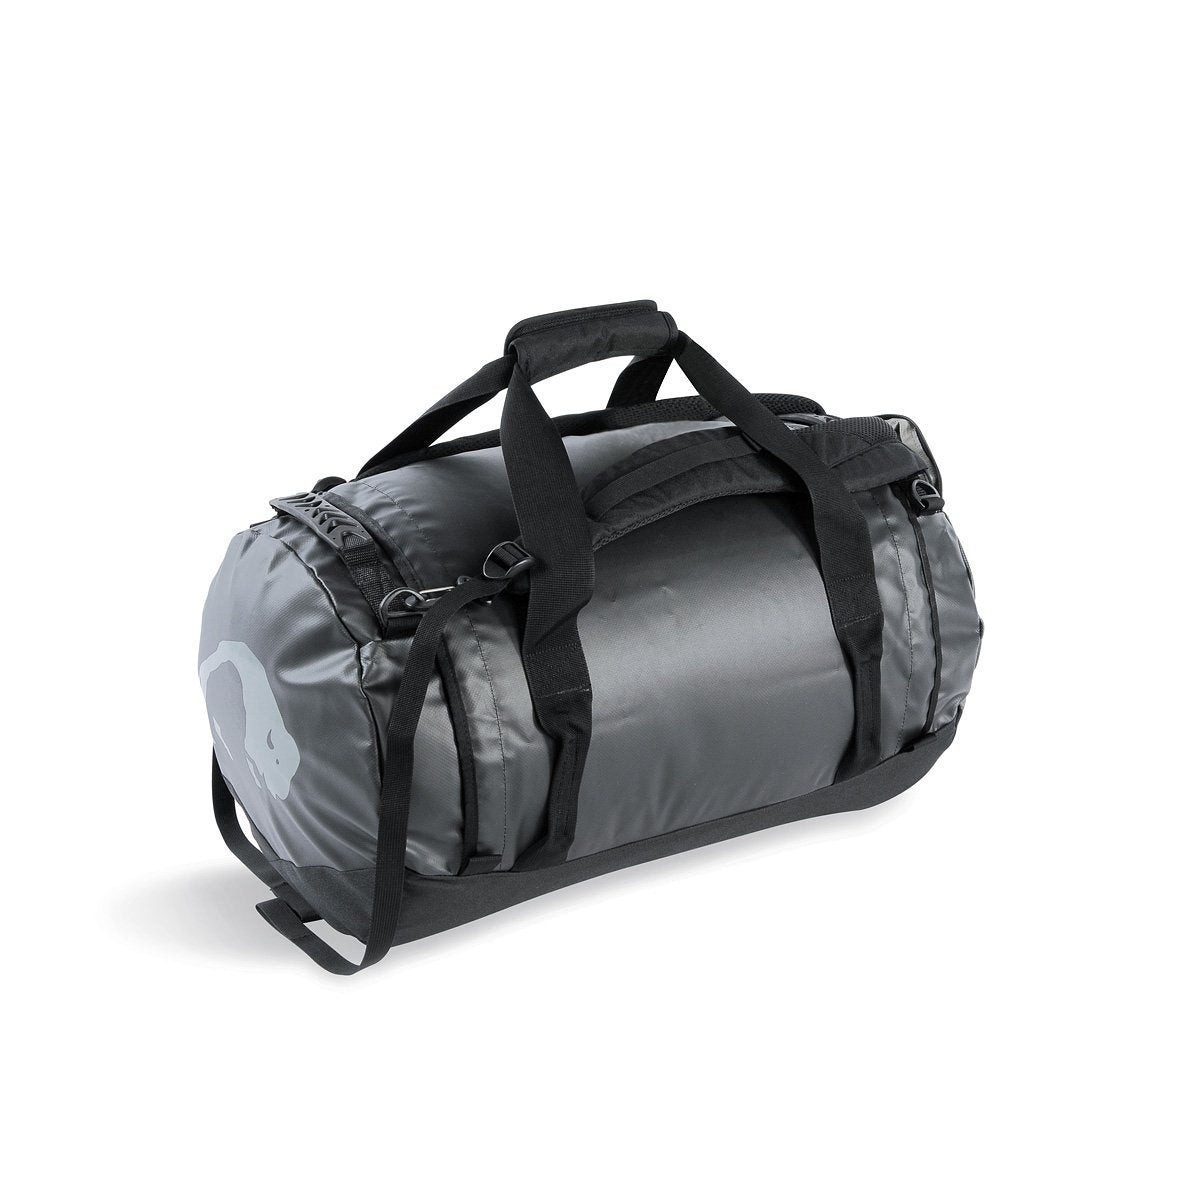 Tatonka Barrel Small 45L Travel Bag Black Bags, Packs and Cases Tatonka Tactical Gear Supplier Tactical Distributors Australia